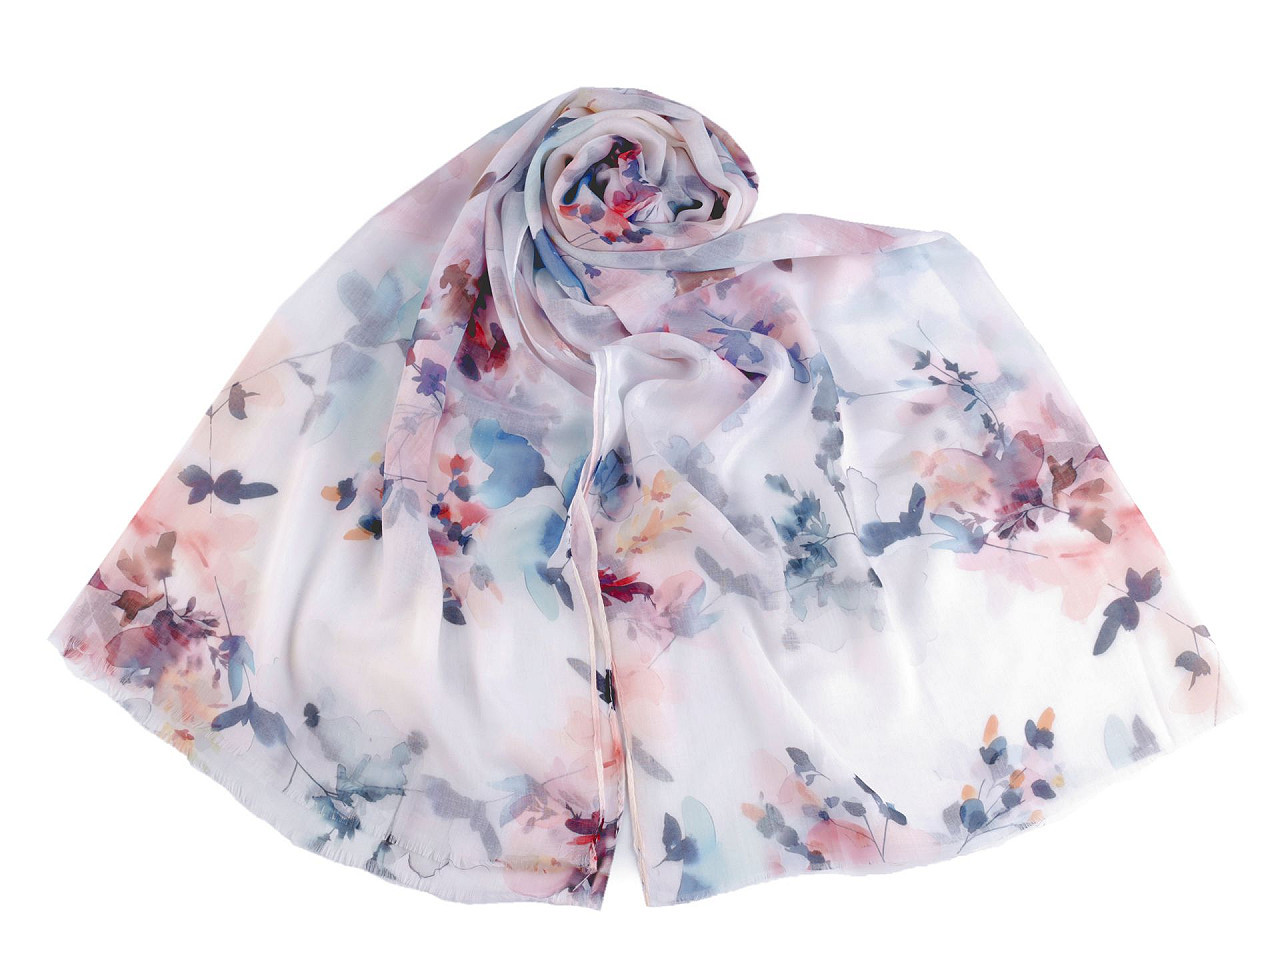 Letní šátek / šála s malovanými květy 70x180 cm, barva 2 modrošedá sv.